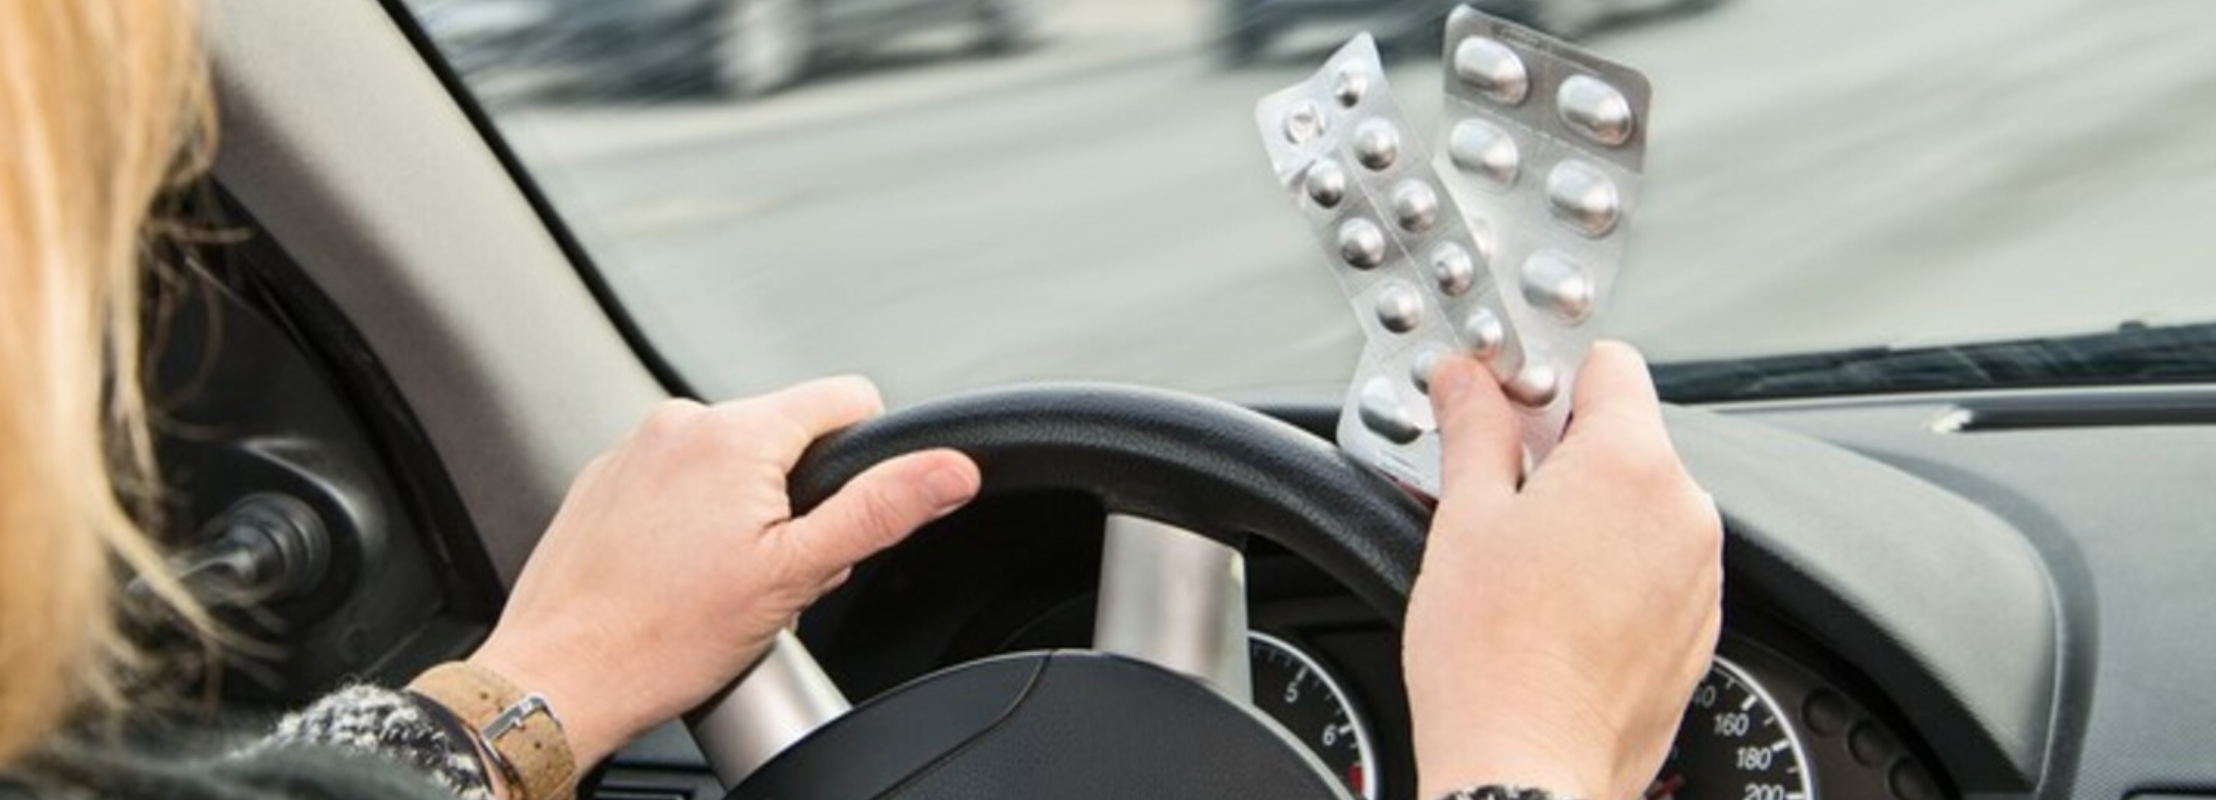 Certains médicaments que vous prenez peuvent perturber votre comportement sur la route et vous mettre en danger.